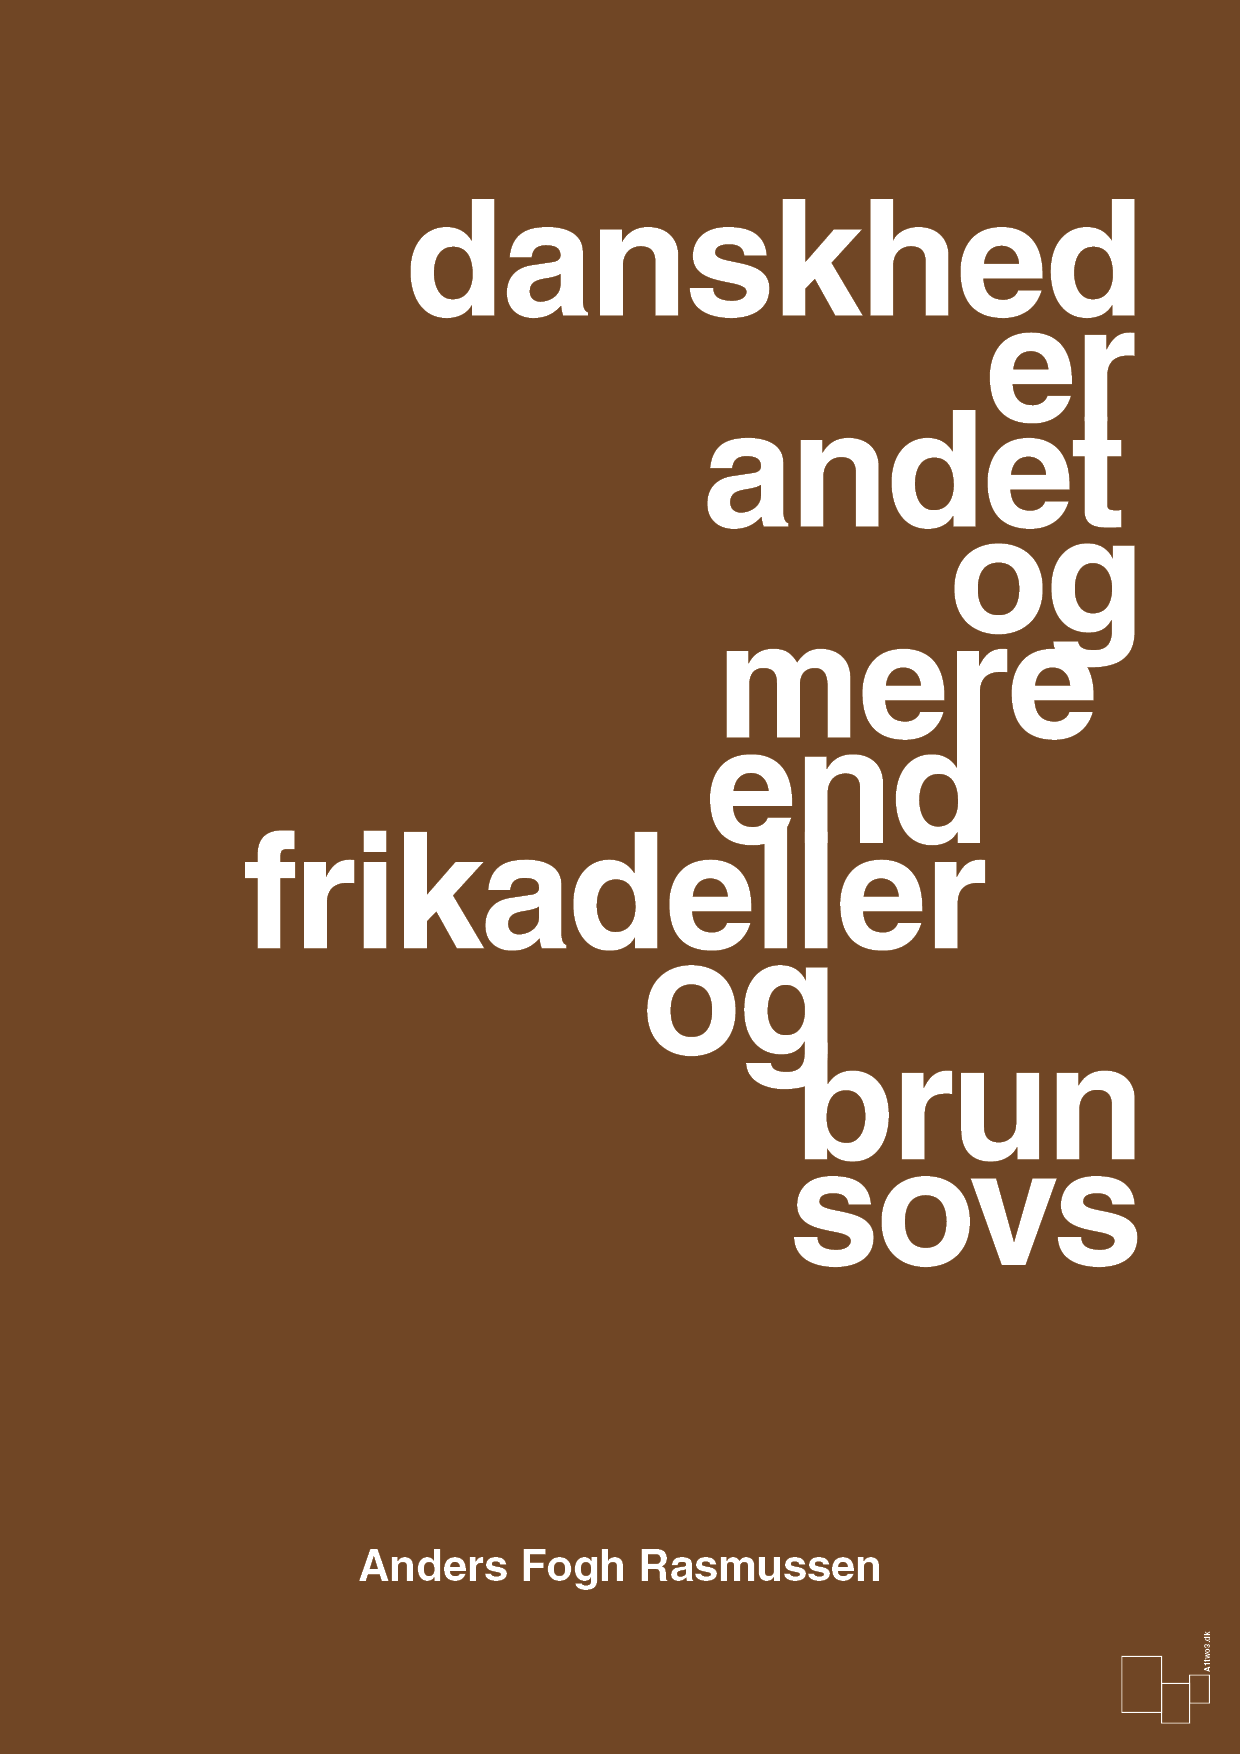 danskhed er andet og mere end frikadeller og brun sovs - Plakat med Citater i Dark Brown